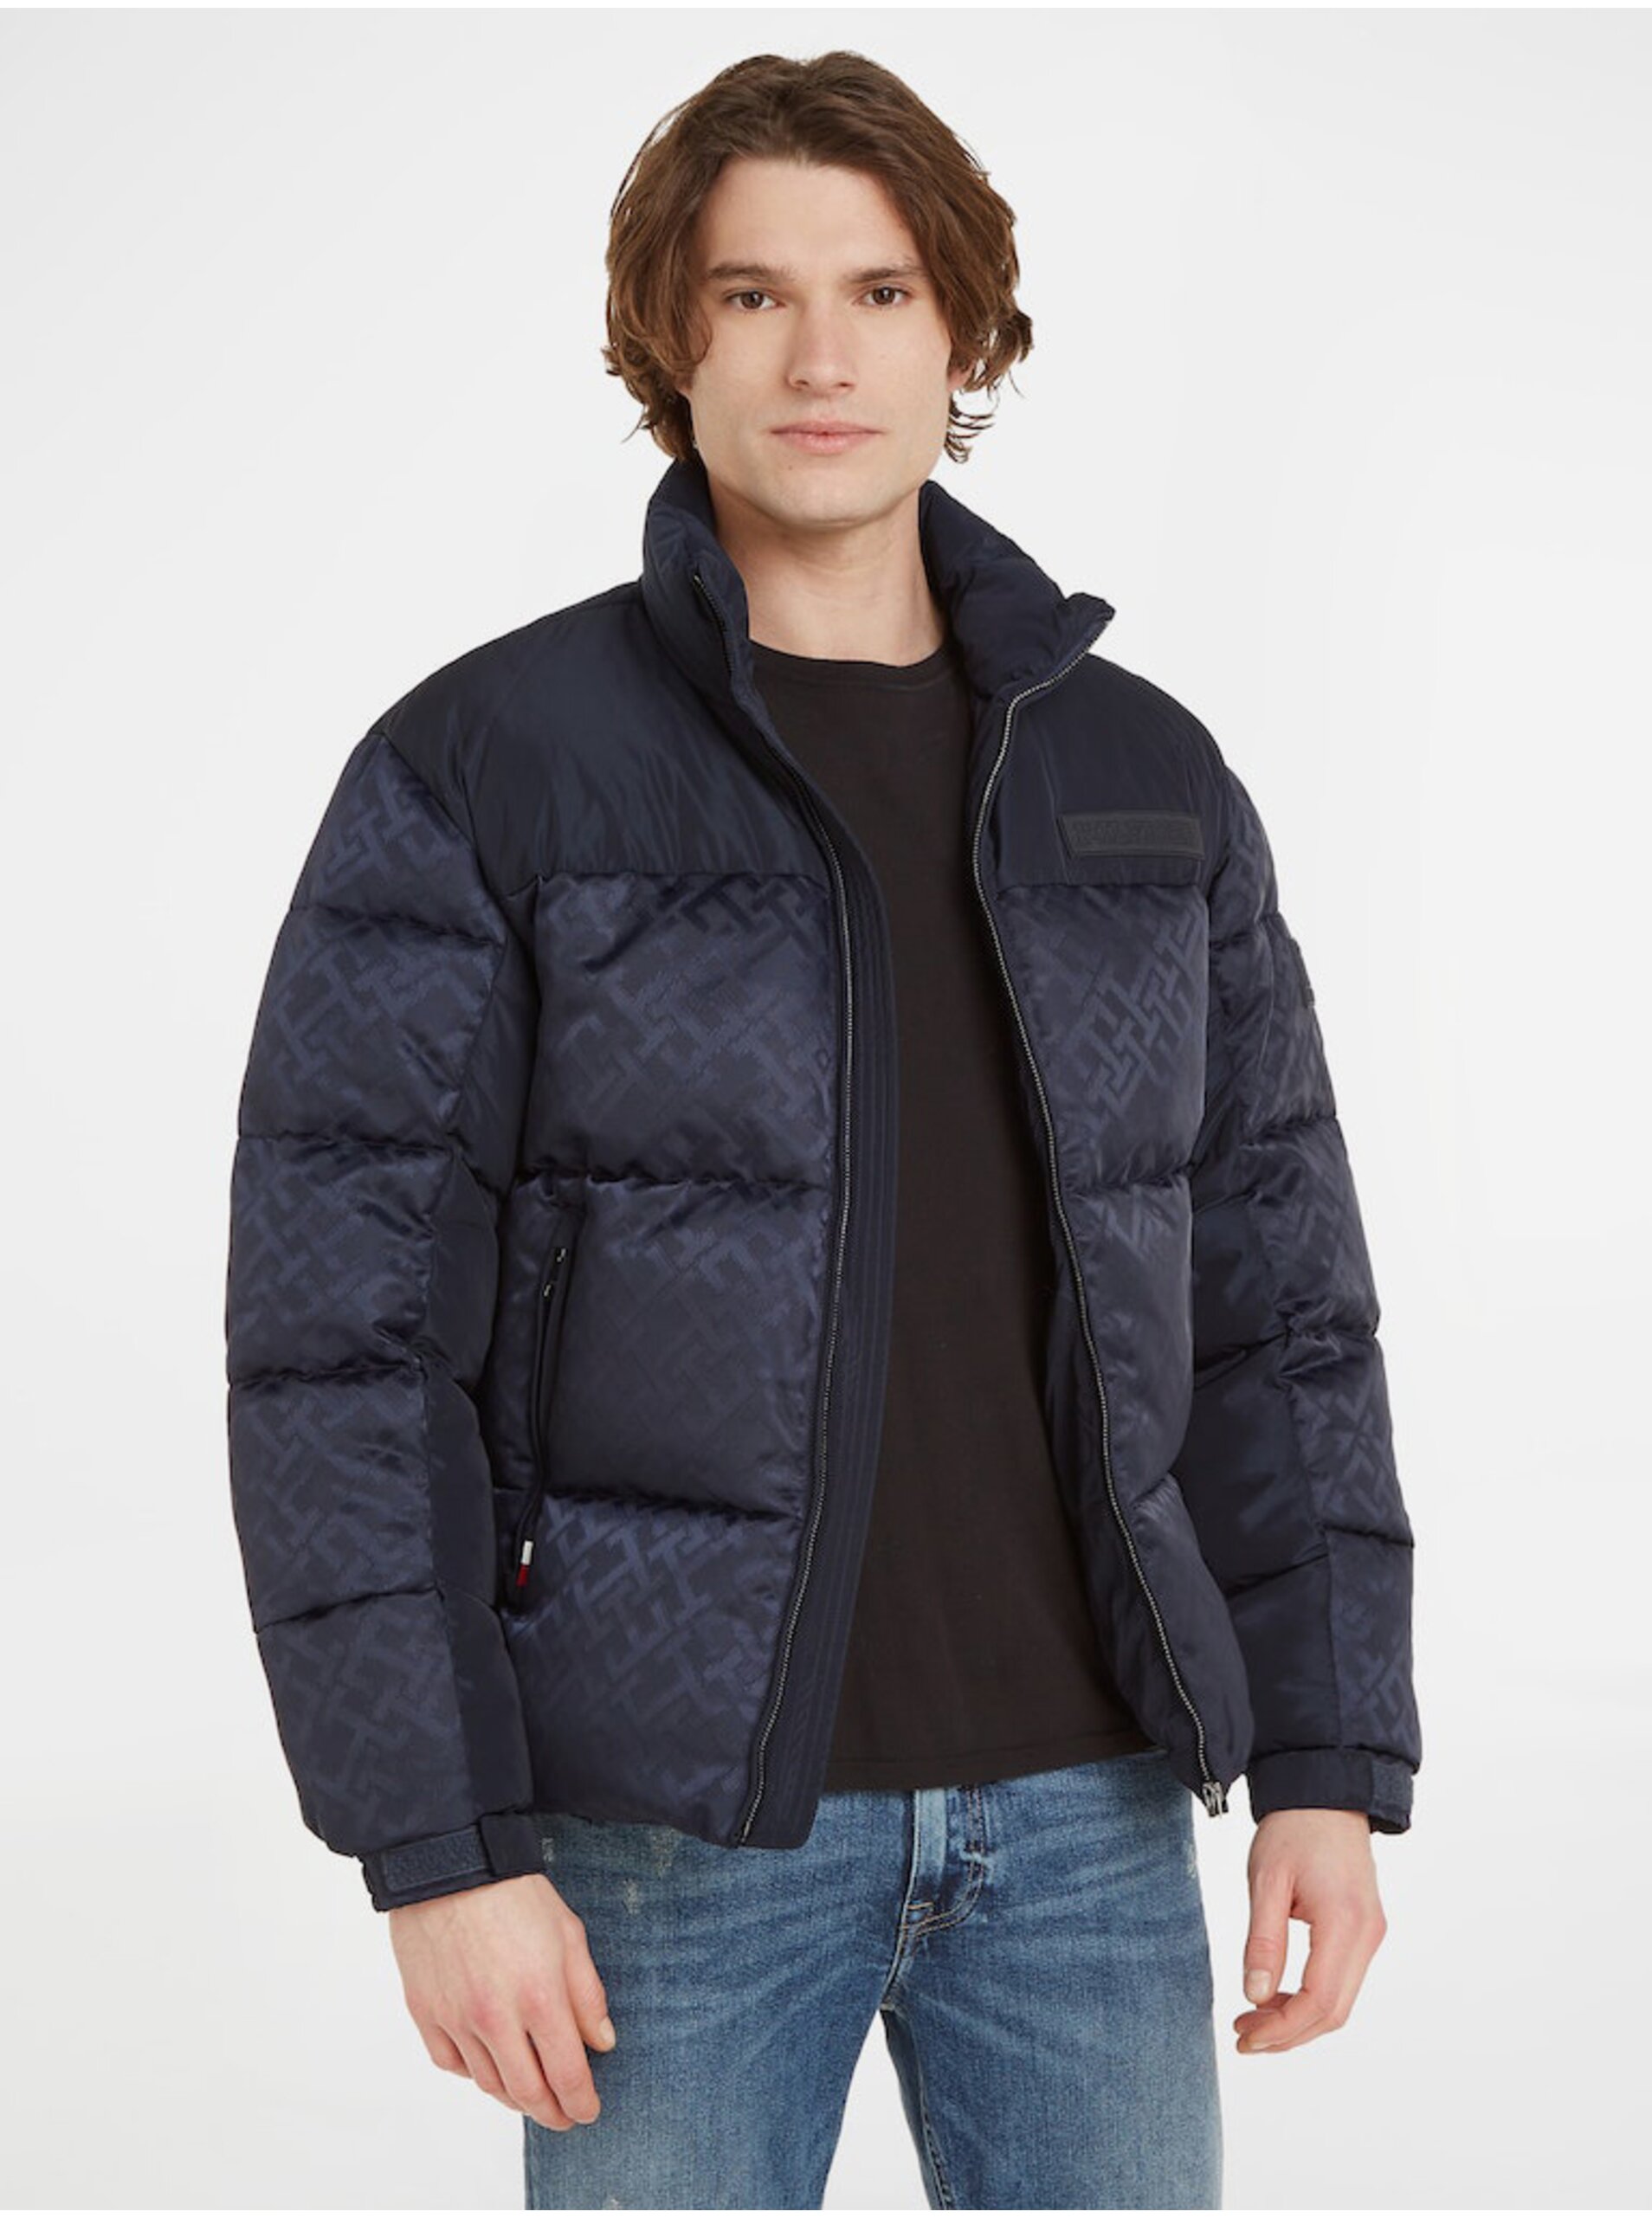 E-shop Tmavomodrá pánska zimná prešívaná bunda Tommy Hilfiger New York Monogram Puffer Jacket